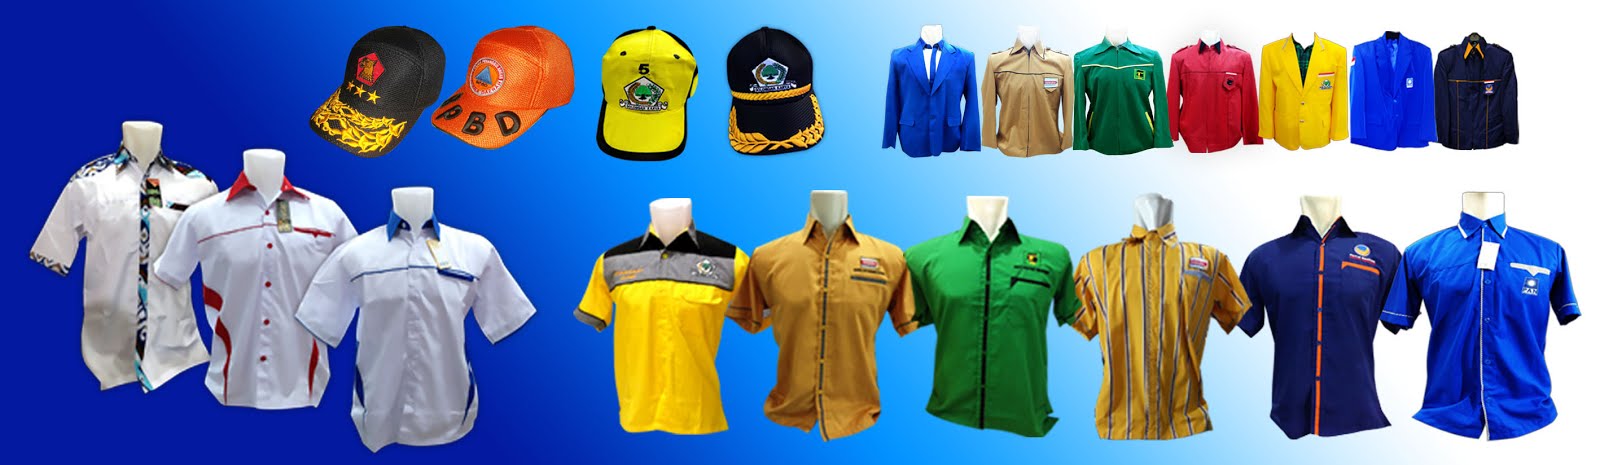 seragam kemeja baju pakaian kaos jaket topi seragam wearpack partai promosi konveksi desain sendiri